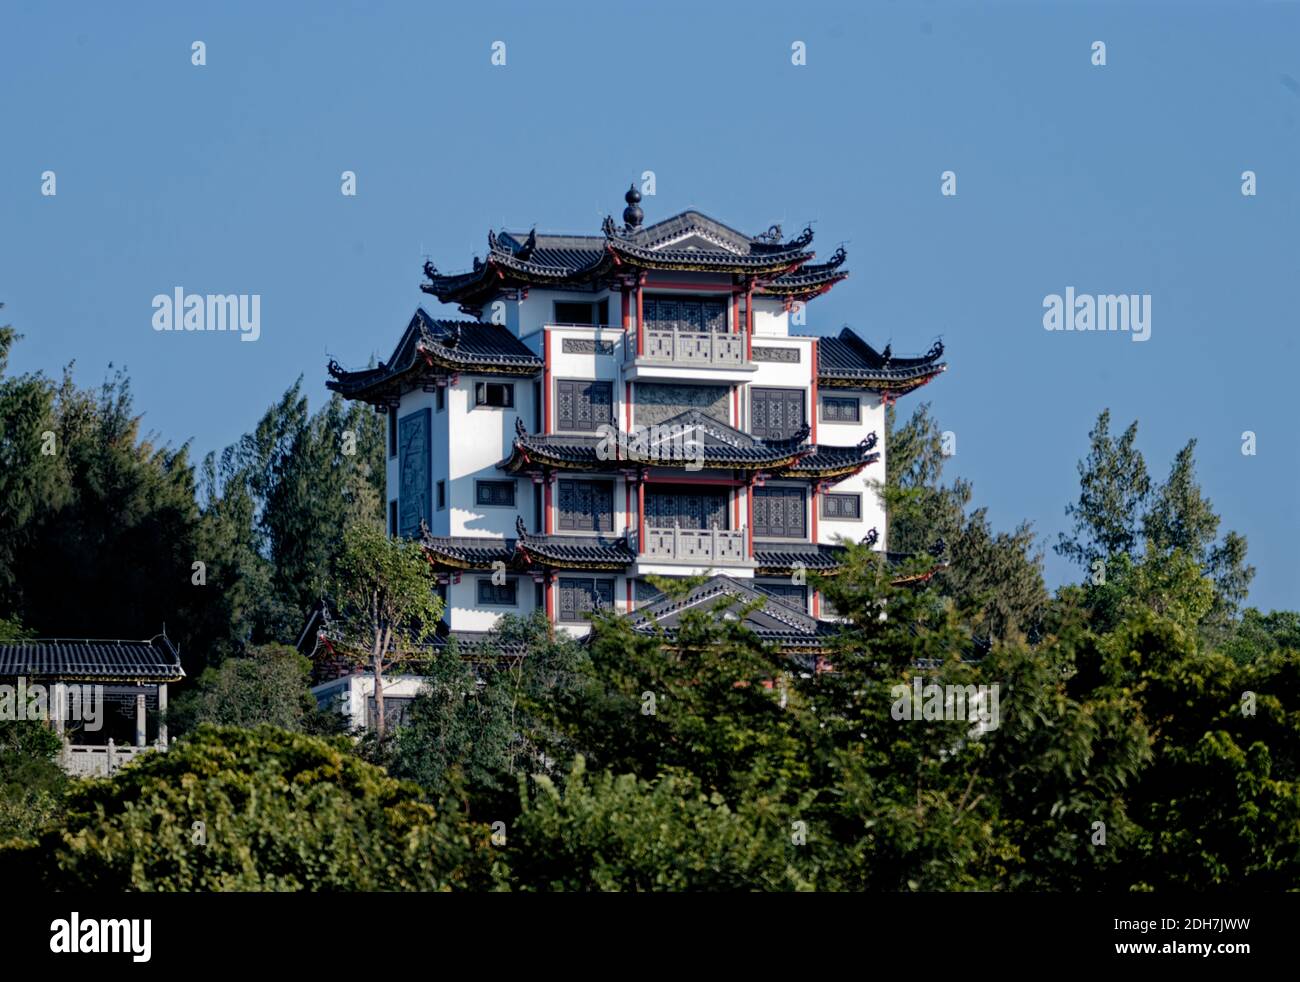 Tradicional hermosa mansión china en la colina contra el cielo azul Foto de stock